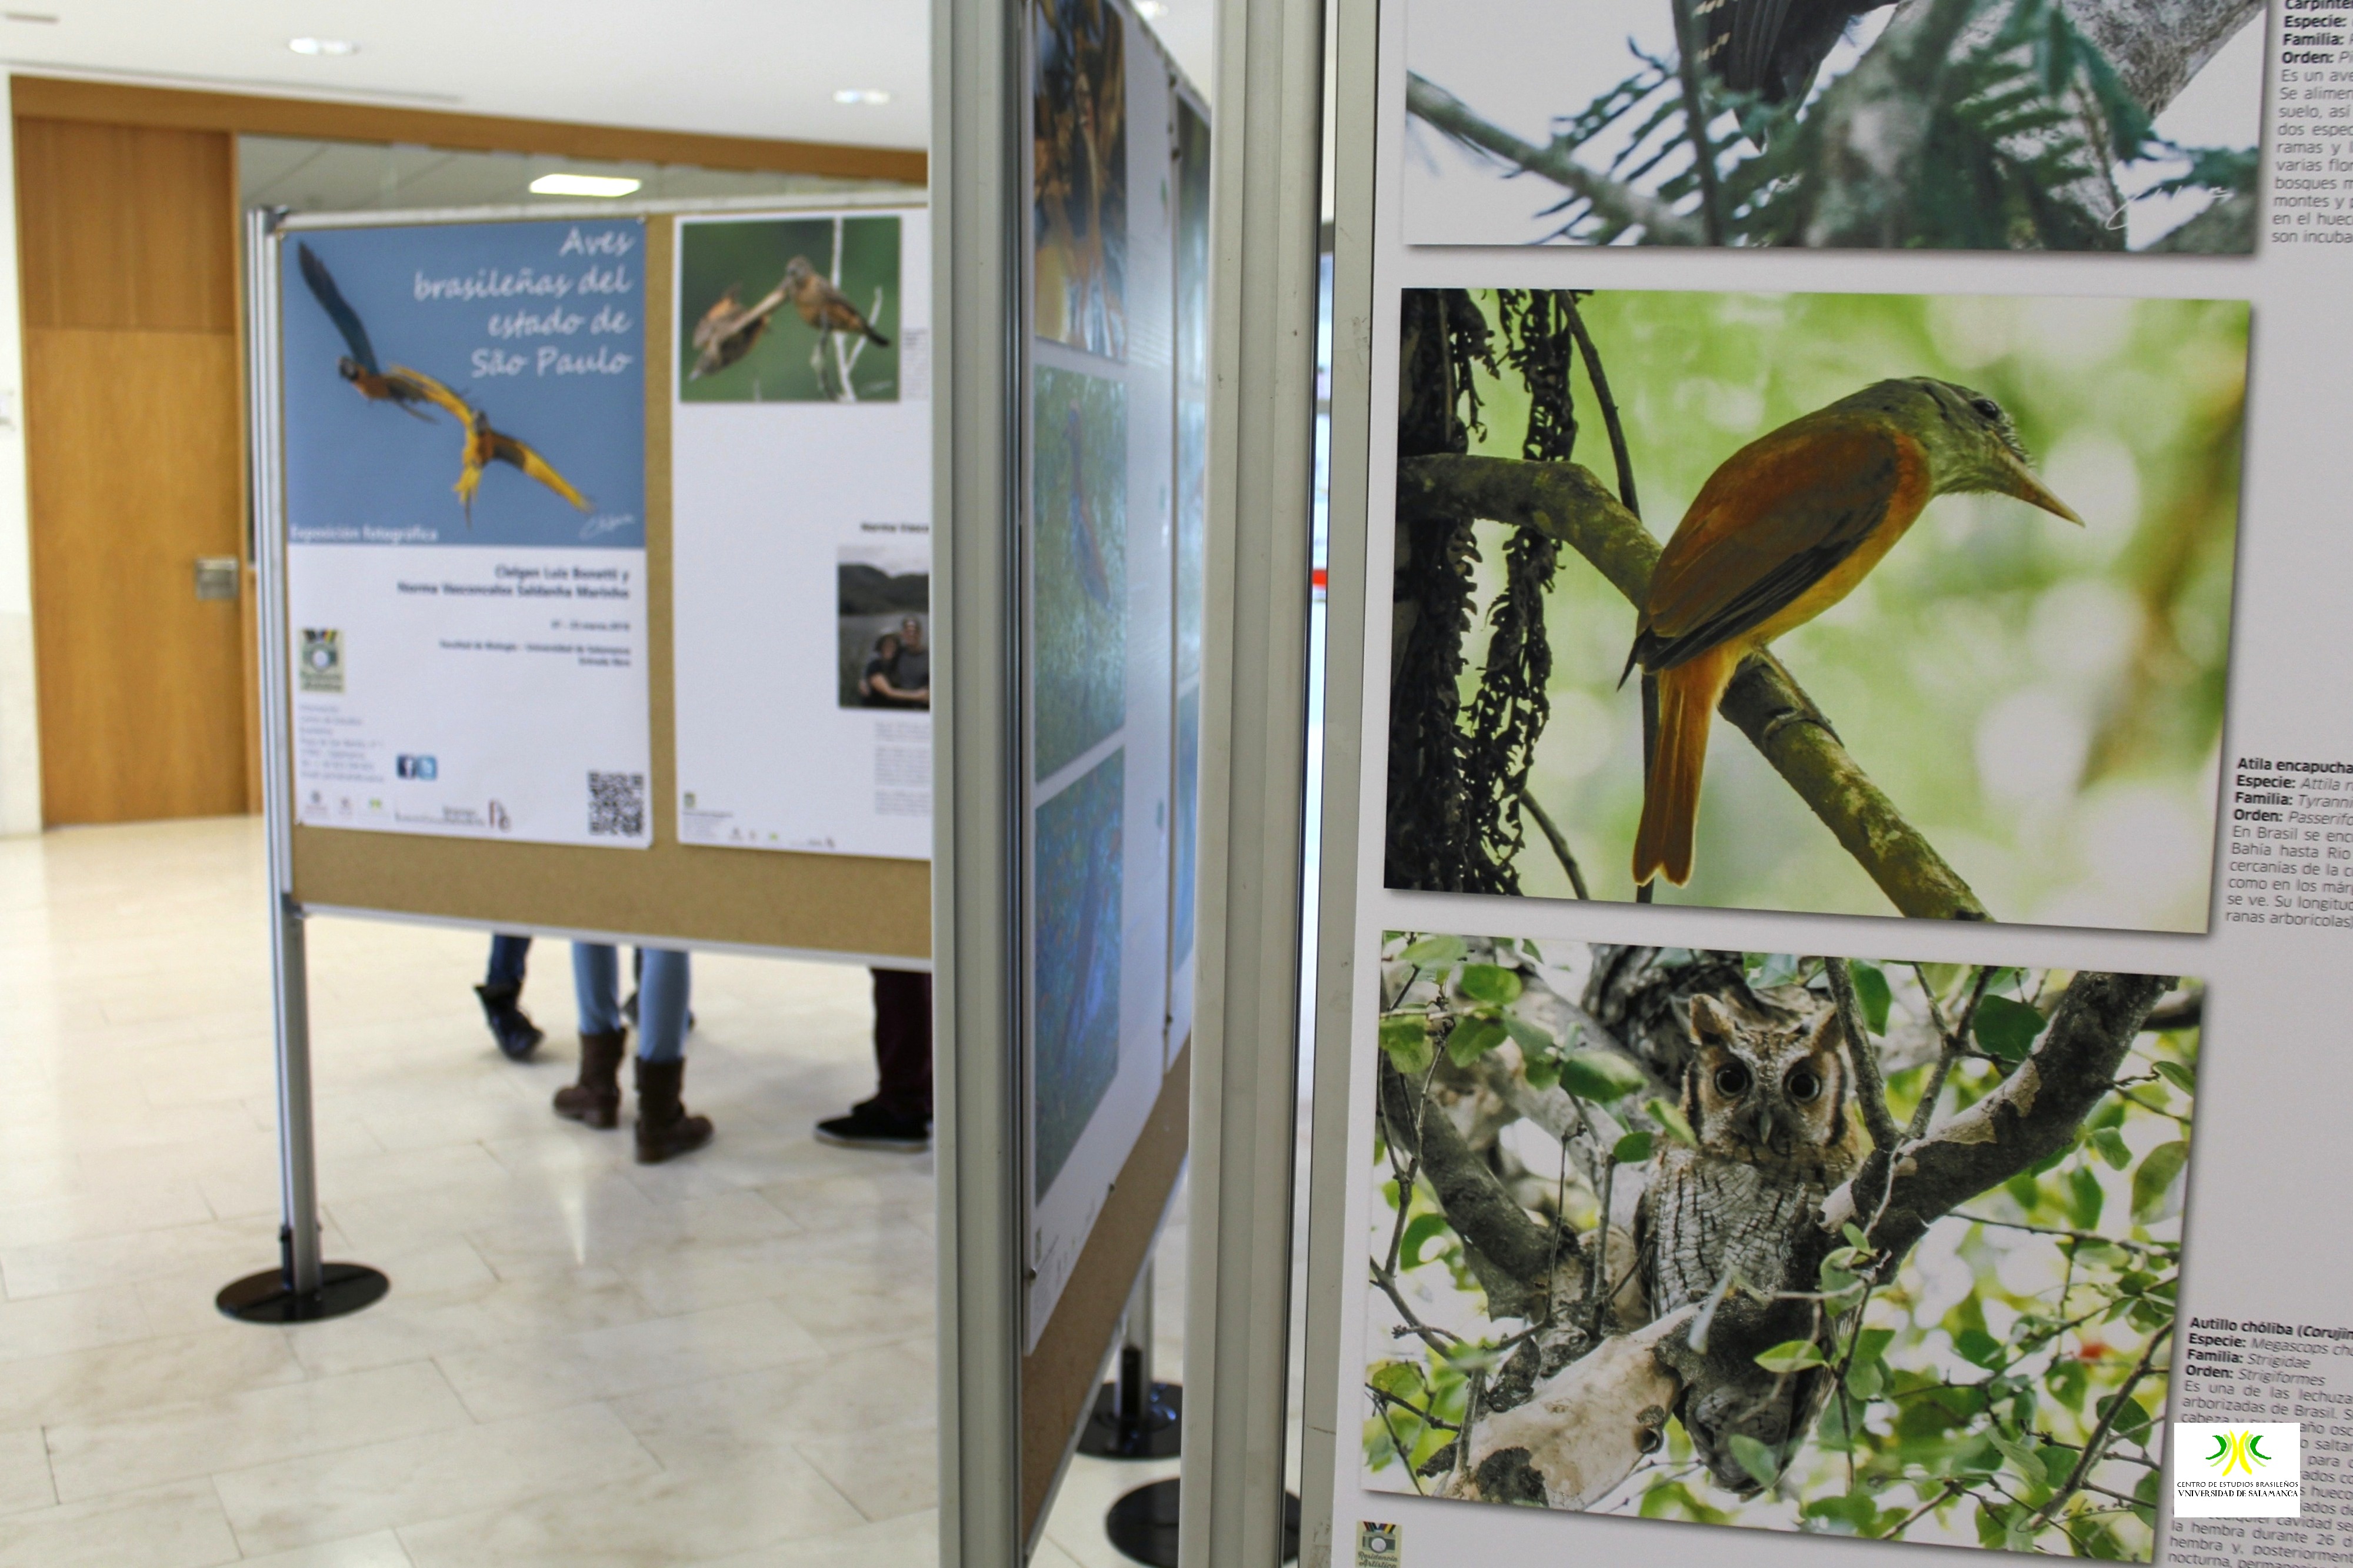 El Centro de Estudios Brasileños inaugura una exposición sobre avifauna del estado de São Paulo en la Facultad de Biología de la Universidad de Salamanca